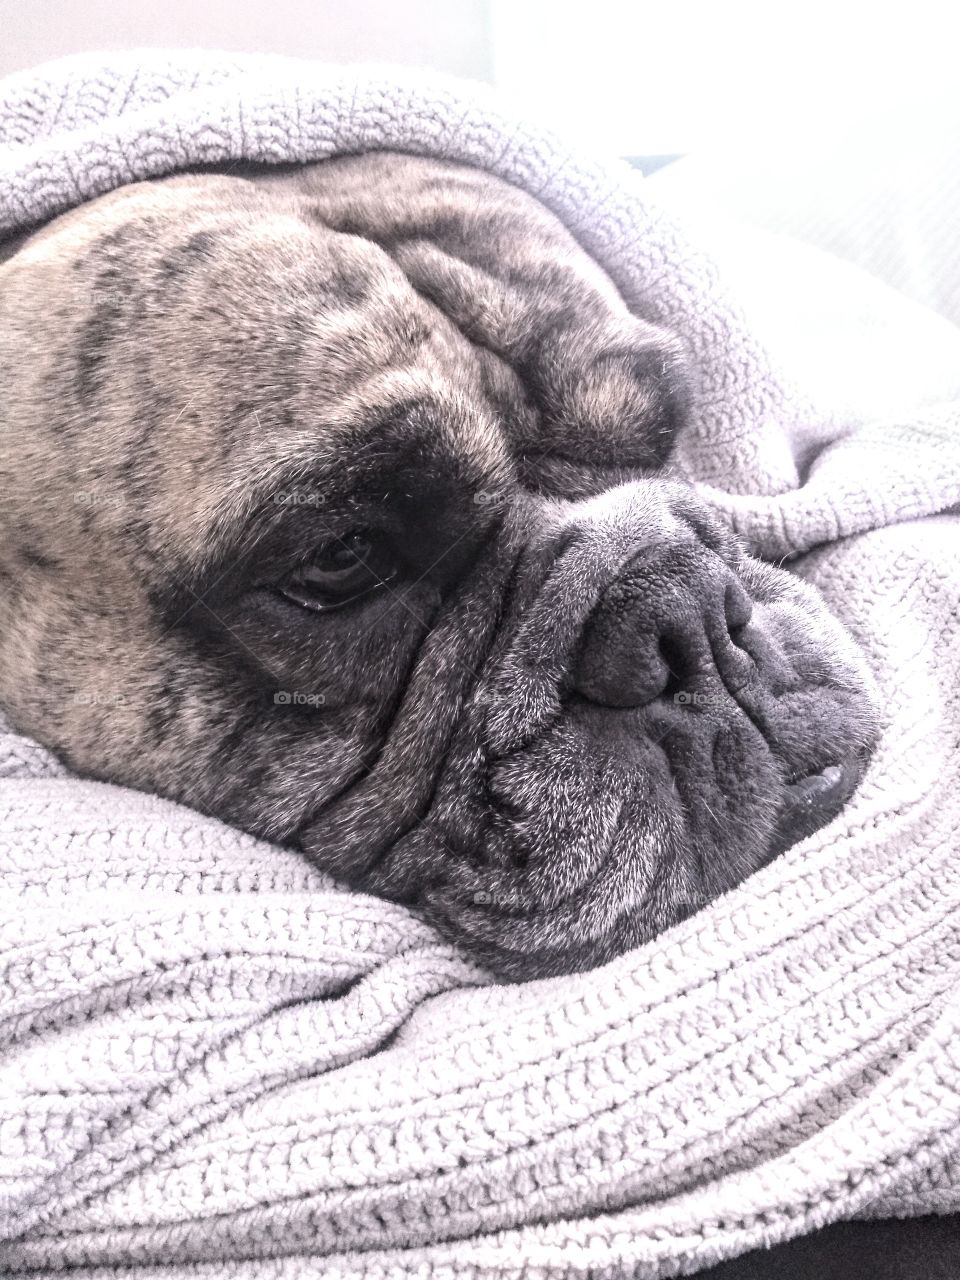 sleepy dog bundled up in a blanket